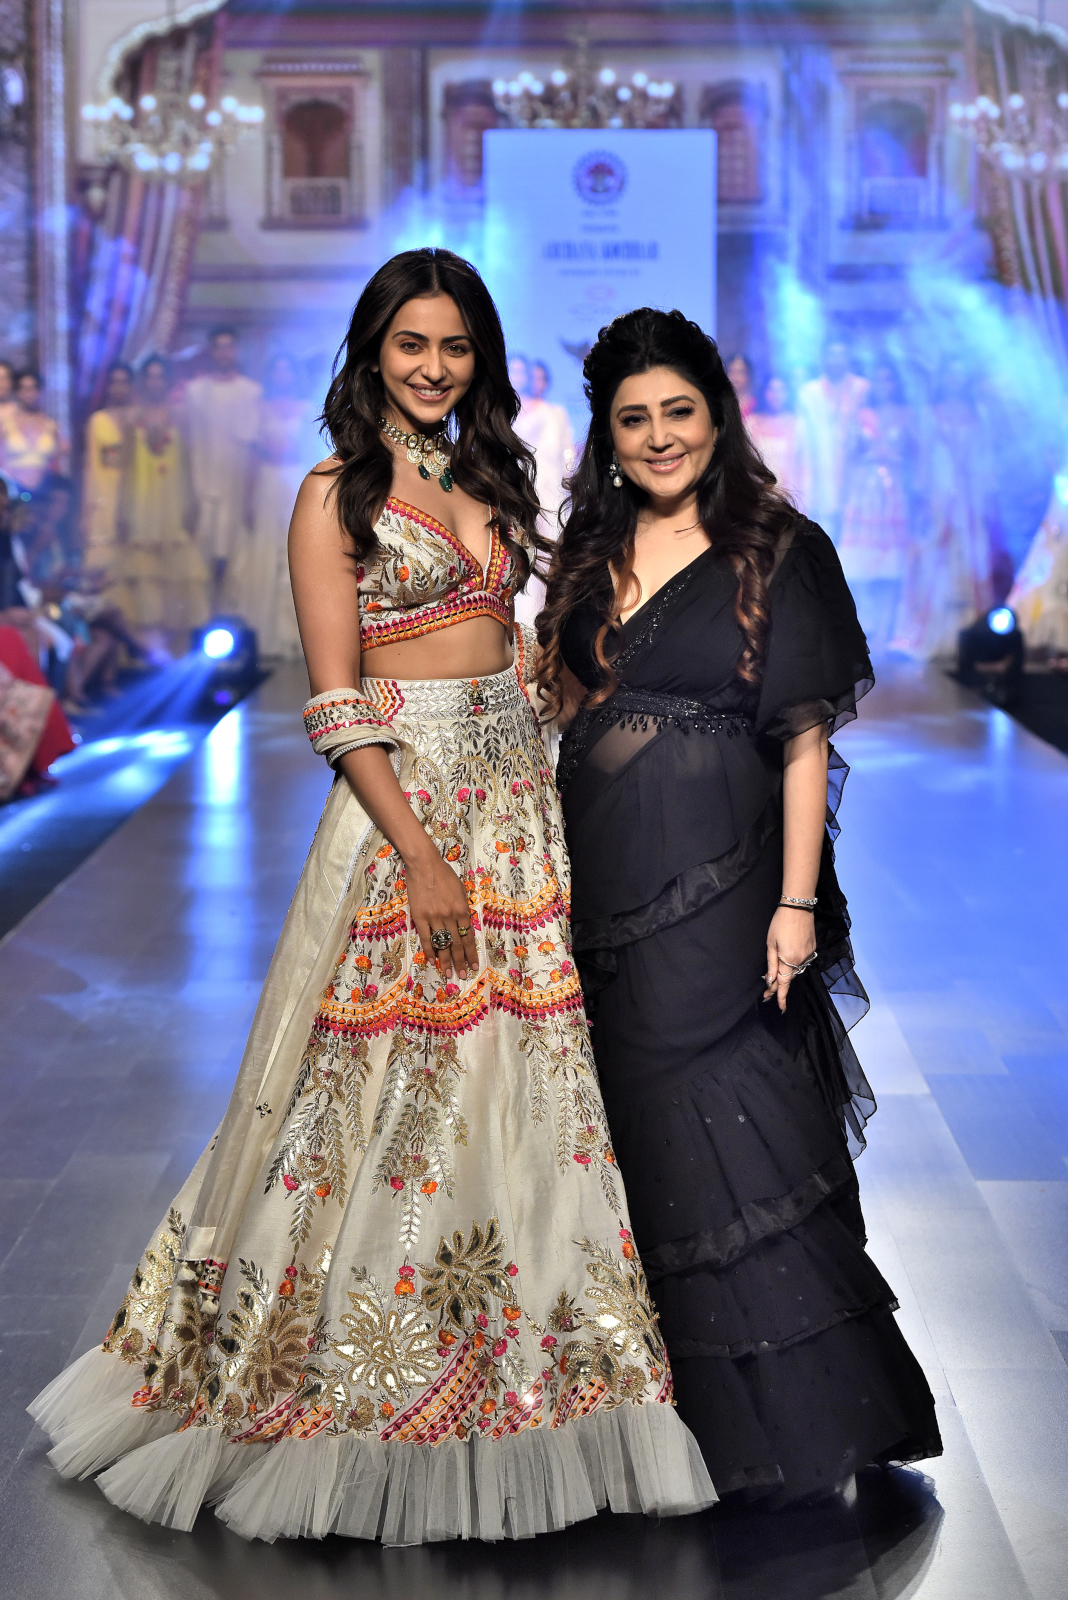 बॉम्बे टाइम्स फैशन वीक: बॉम्बे टाइम्स फैशन वीक में रकुल प्रीत सिंह लहंगे में छाईं